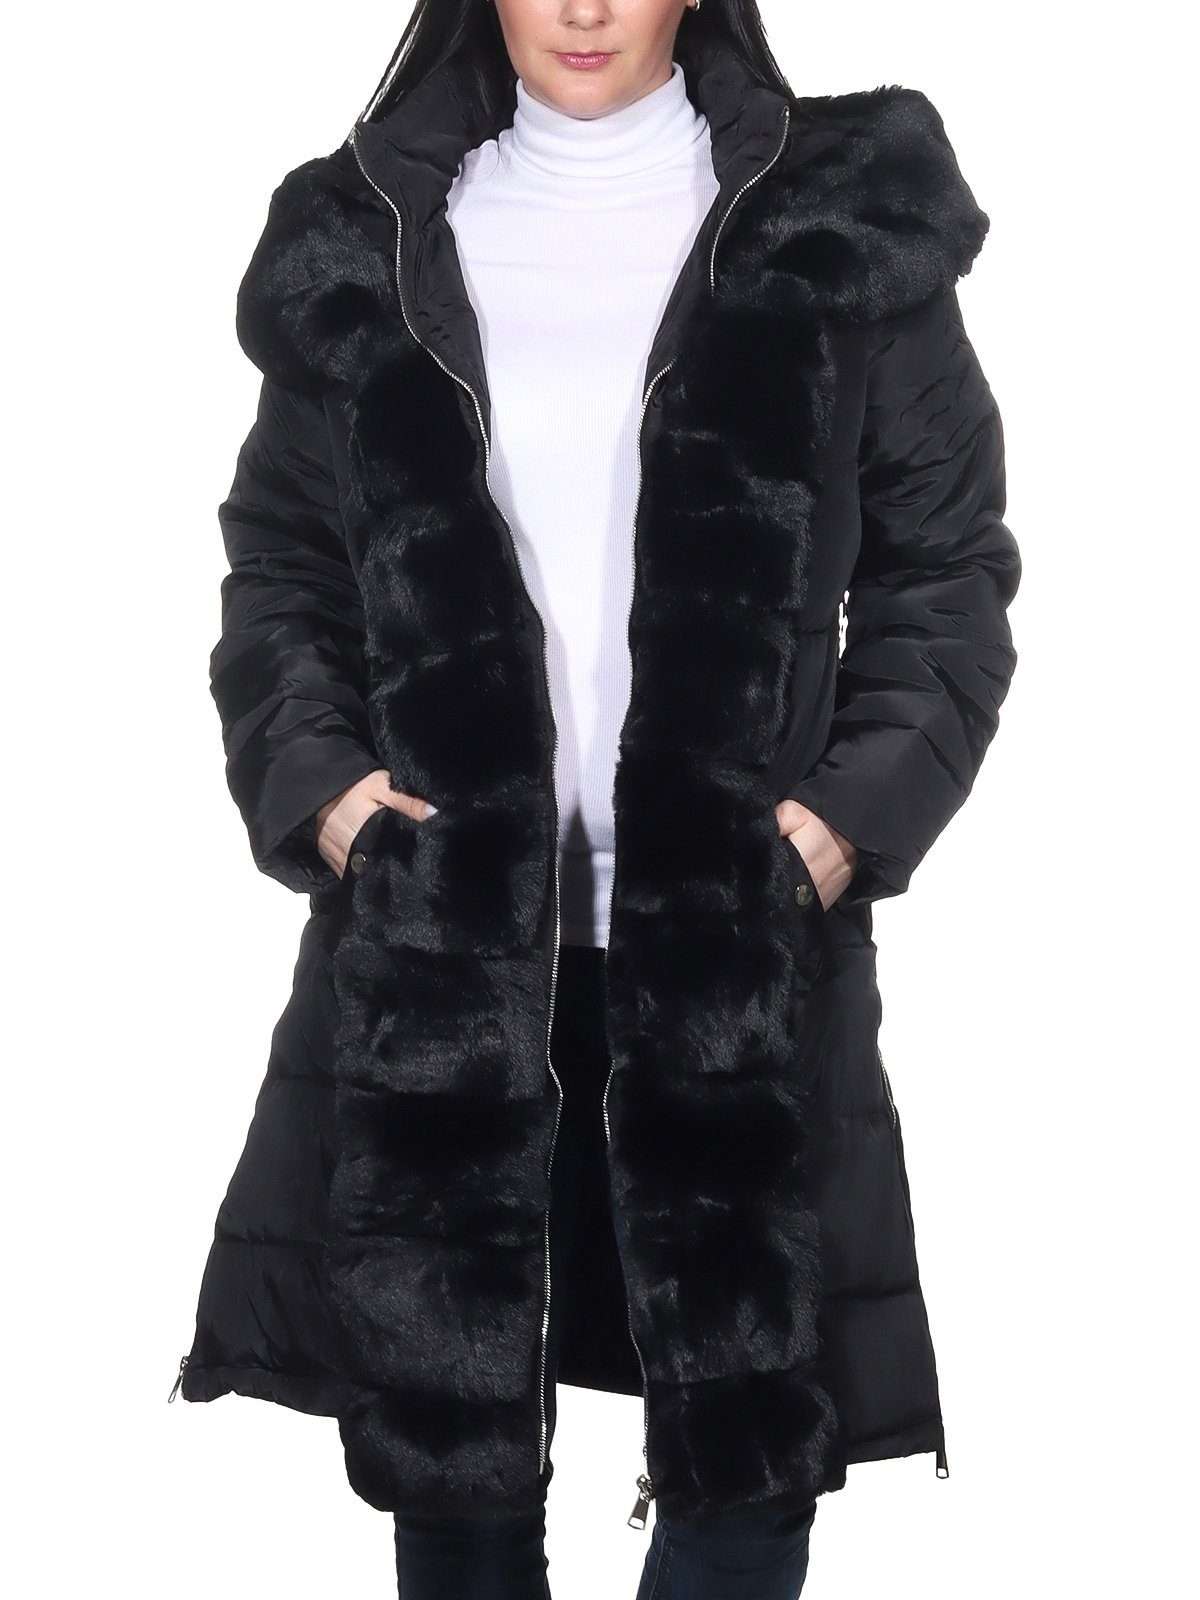 Зимнее пальто. Теплое зимнее пальто для женщин. Стеганое пальто с теплыми аппликациями из искусственного меха.